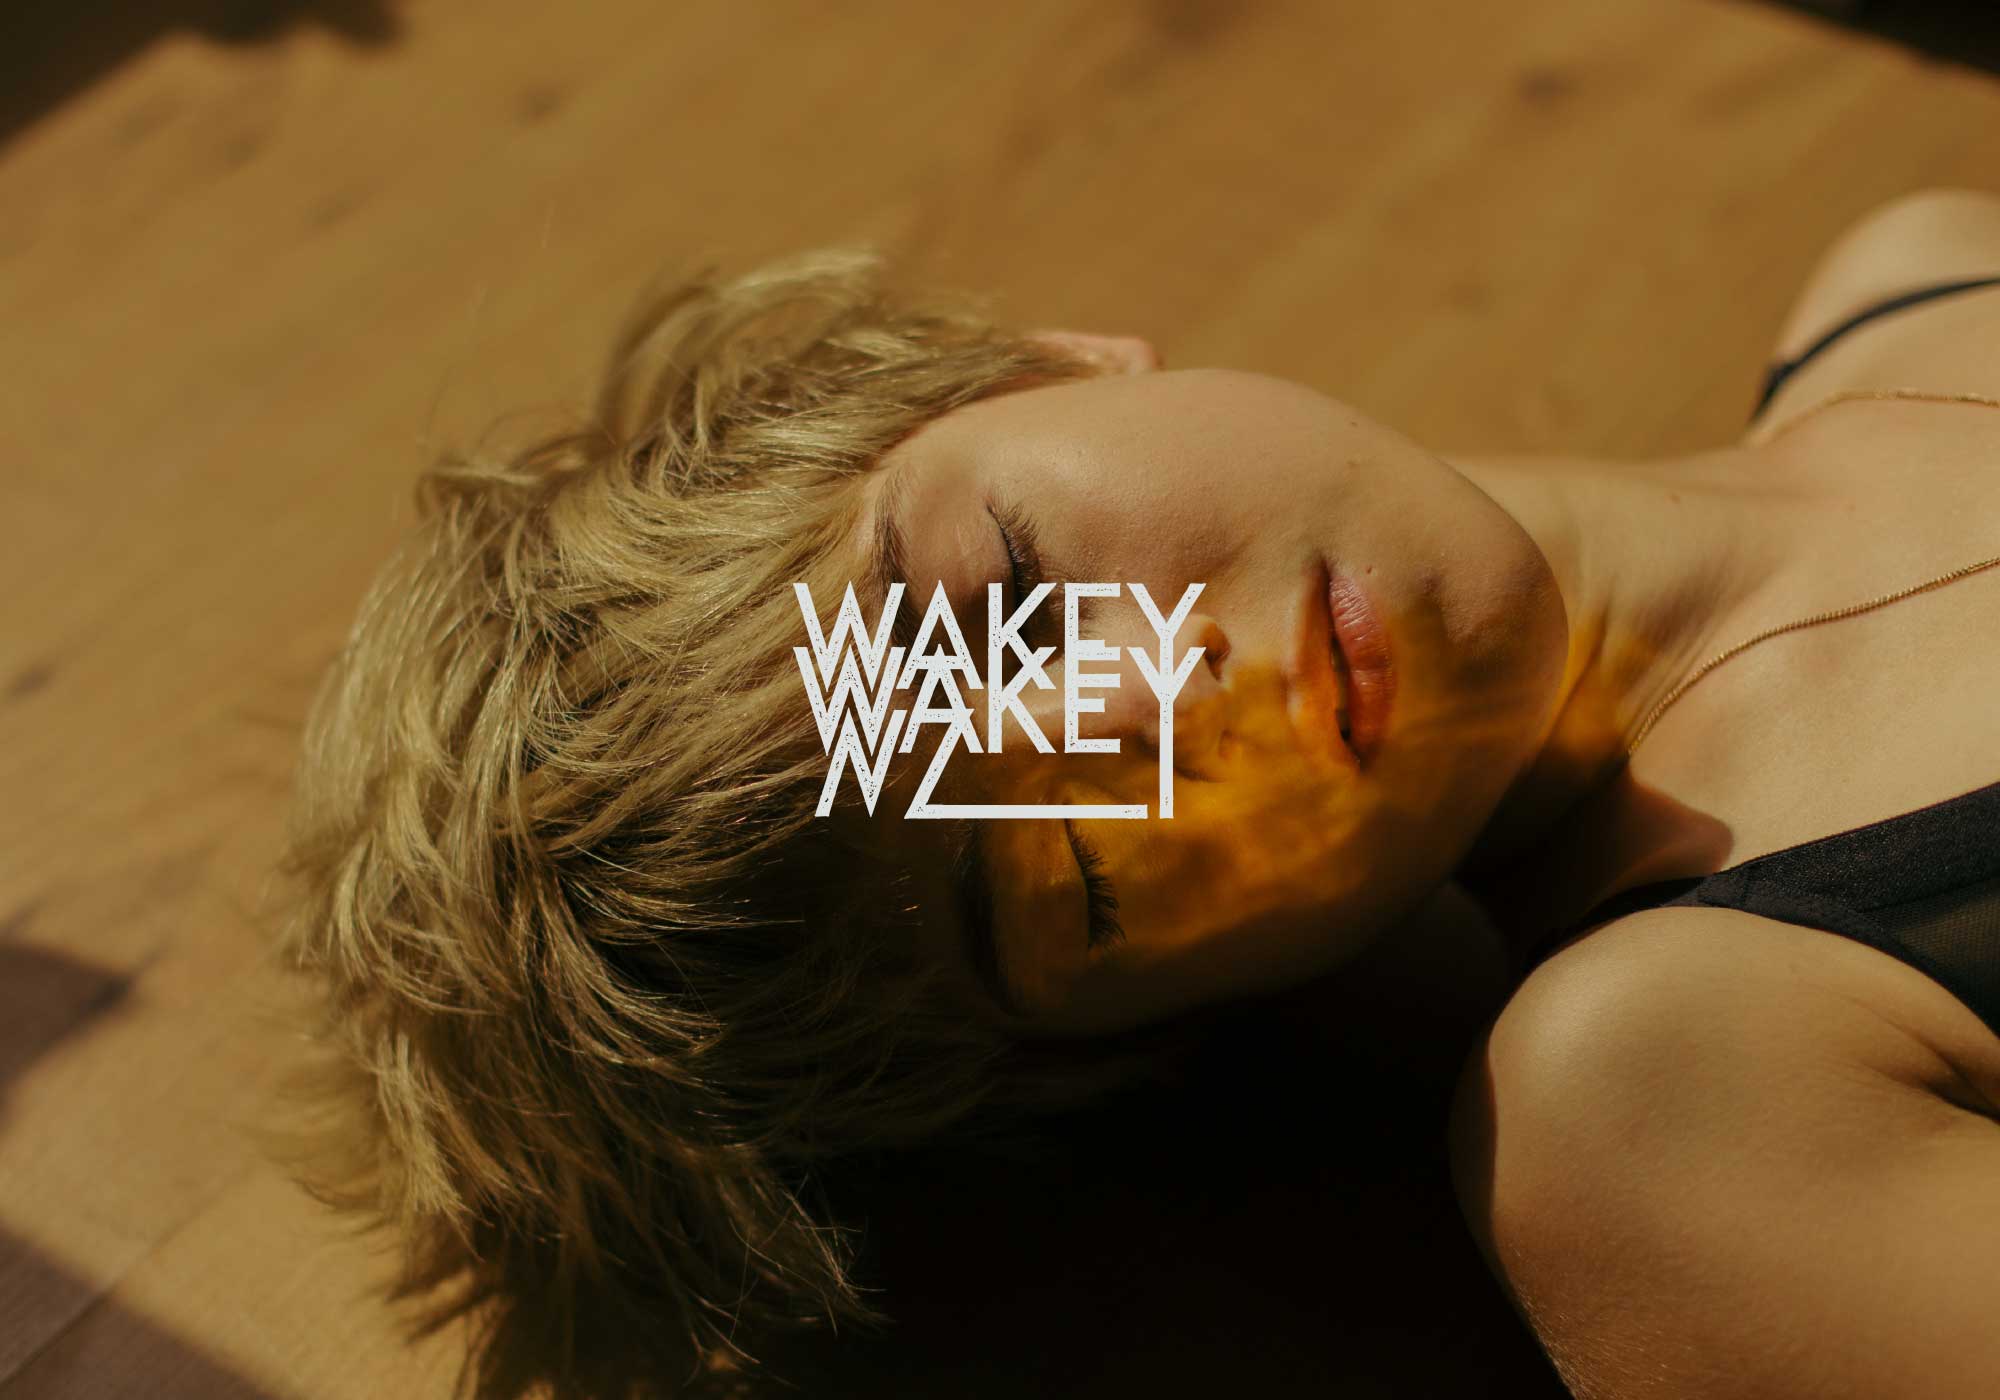 Wakey Wakey